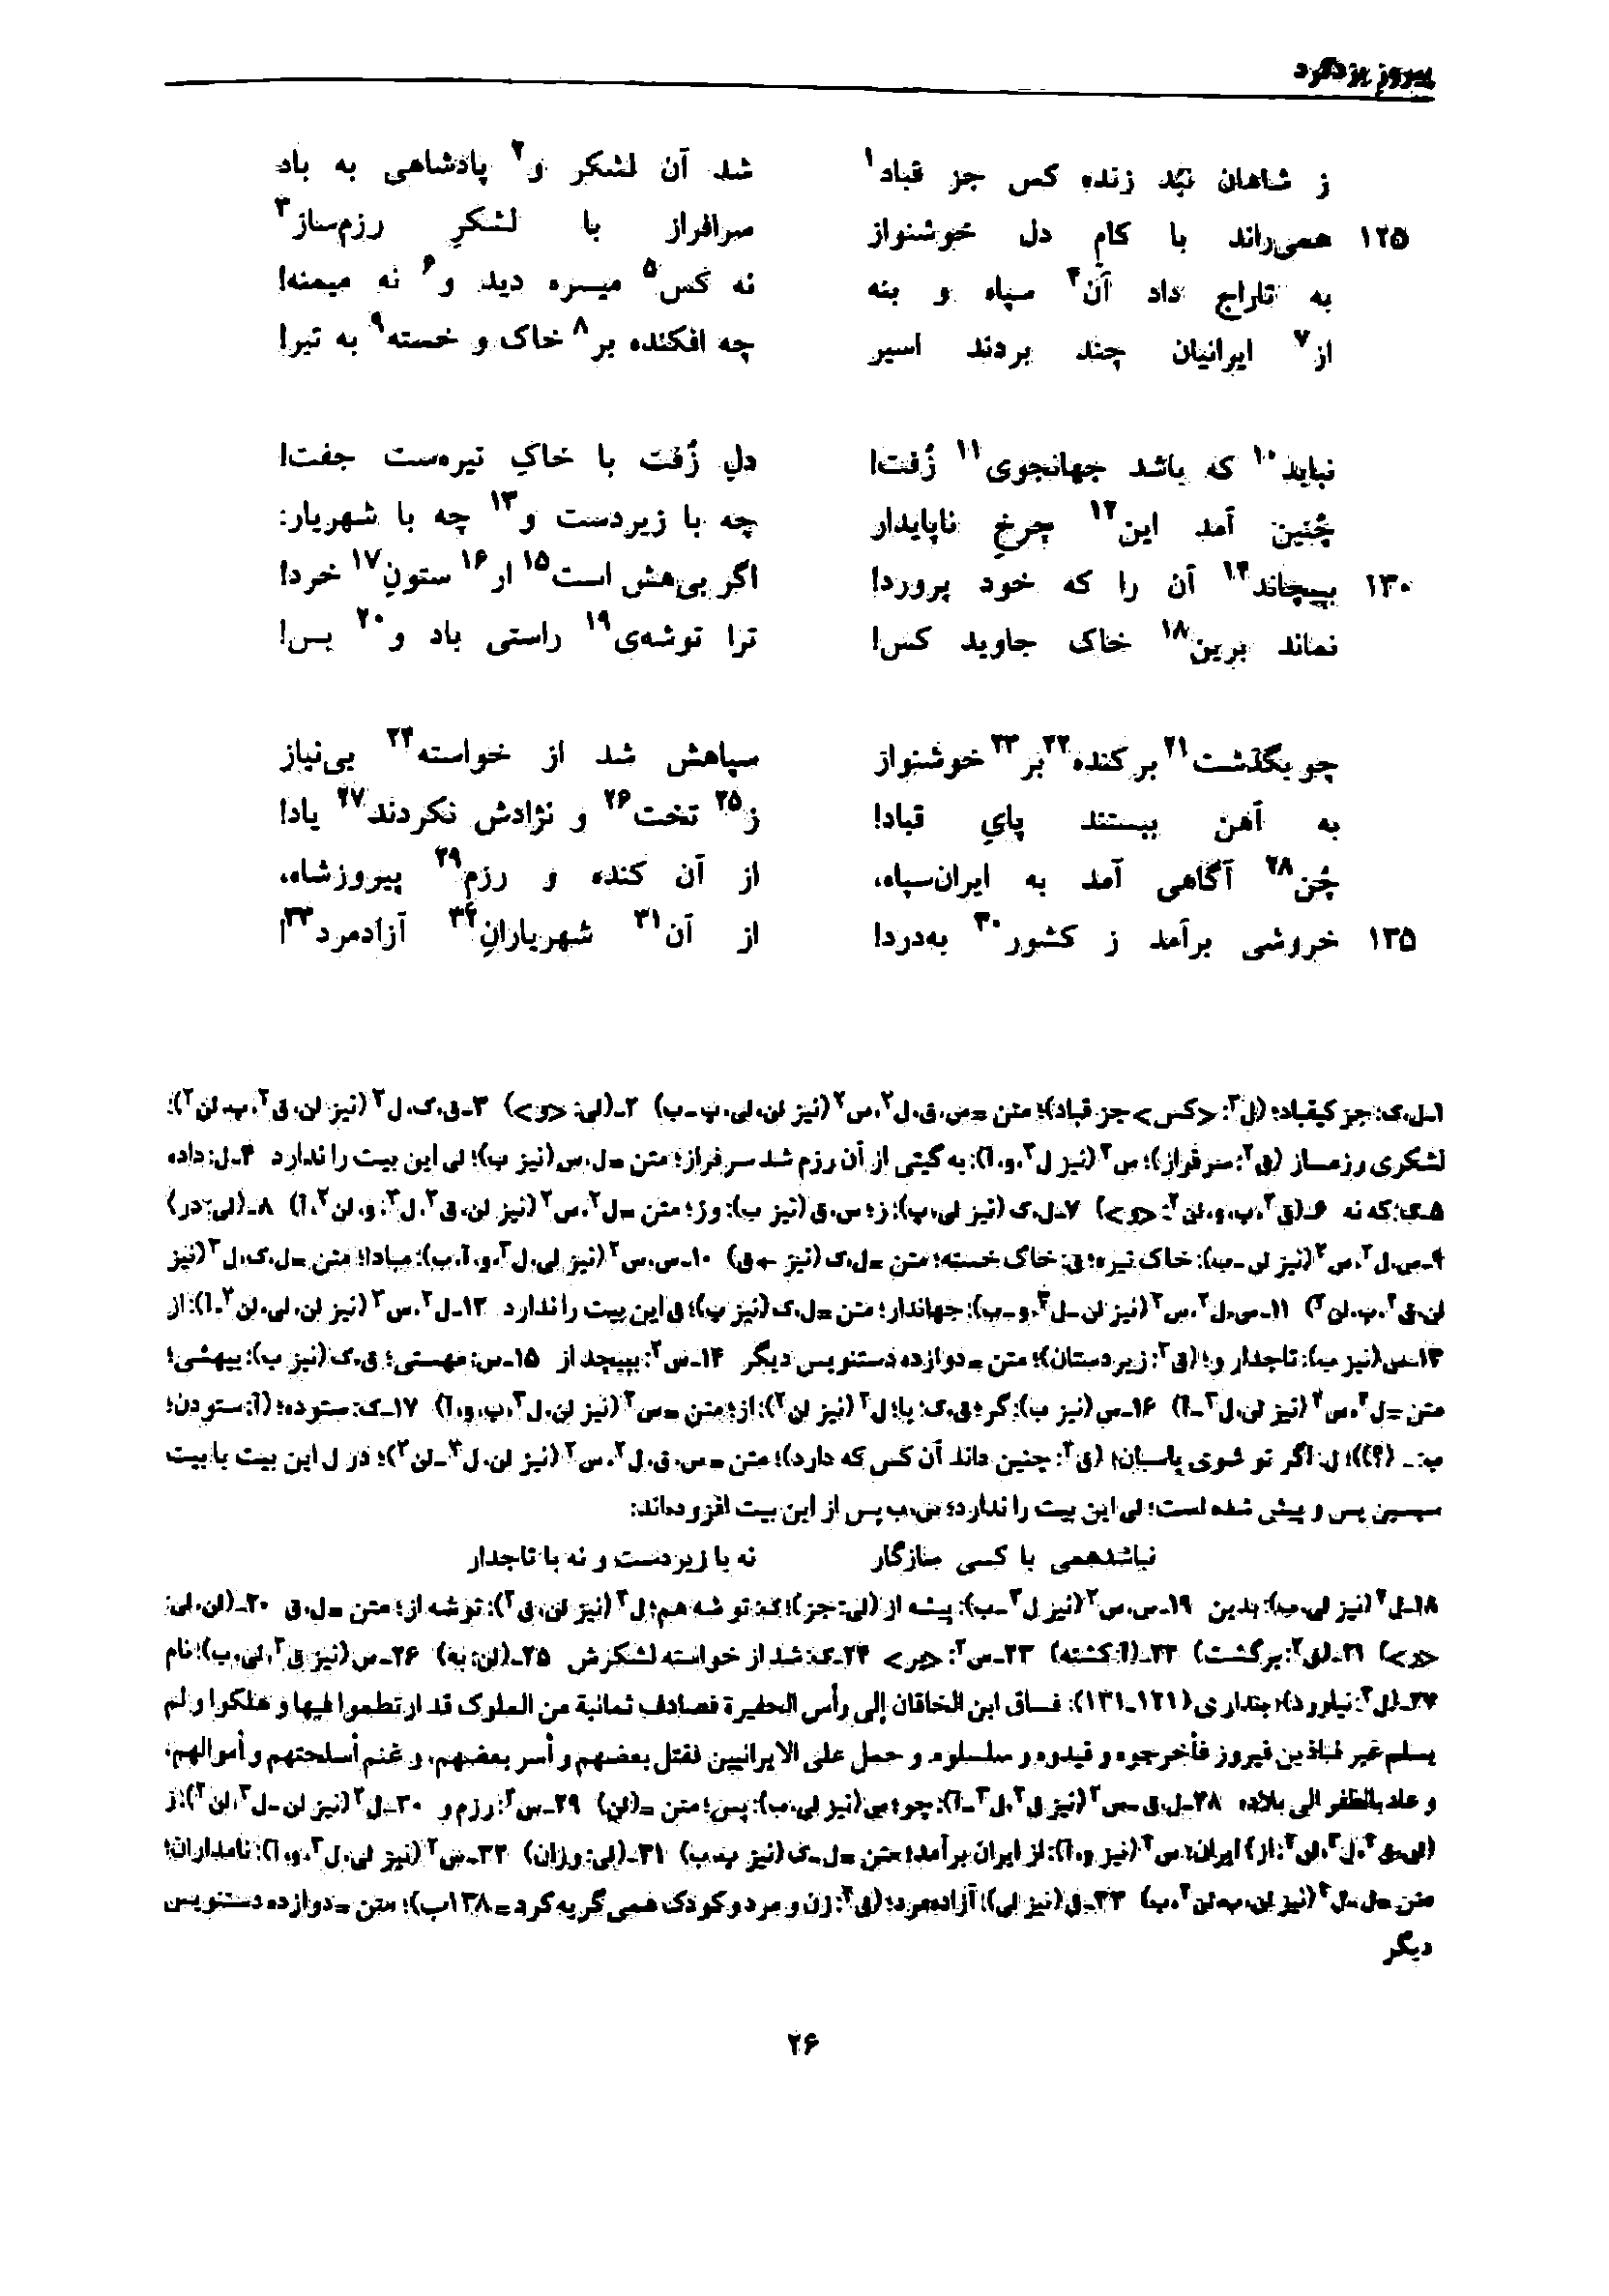 vol. 7, p. 26